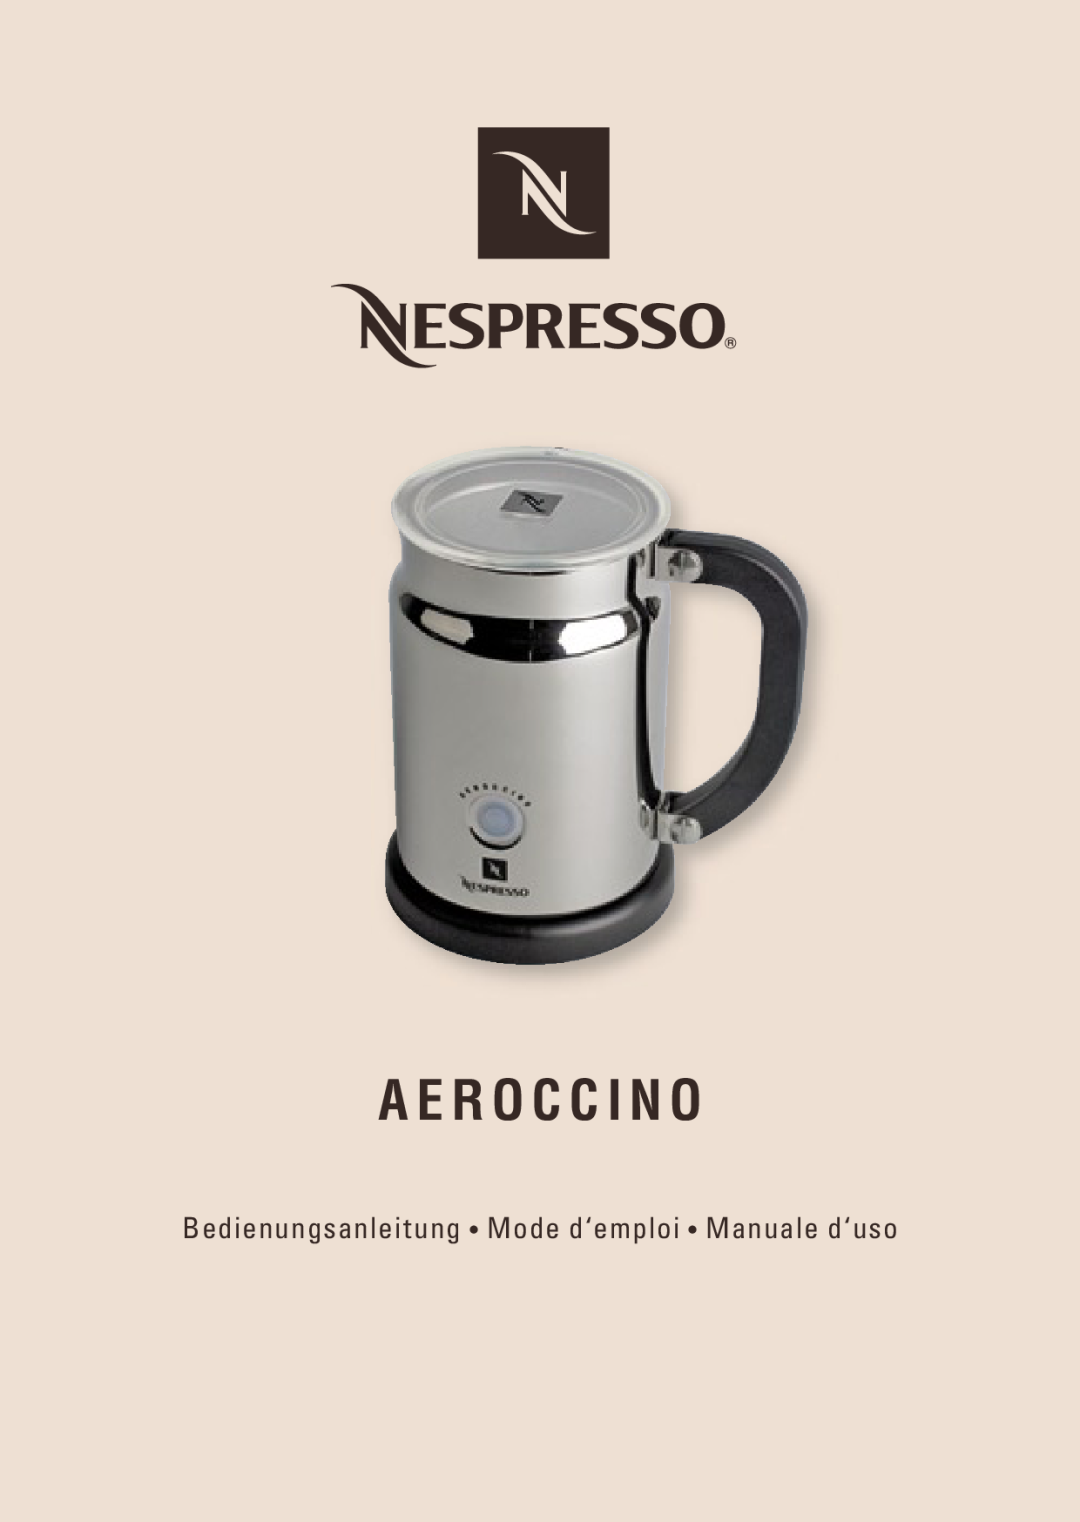 Nespresso AEROCINNO 3190 manual A E R O C C I N O, Bedienungsanleitung Mode d‘emploi Manuale d‘uso 